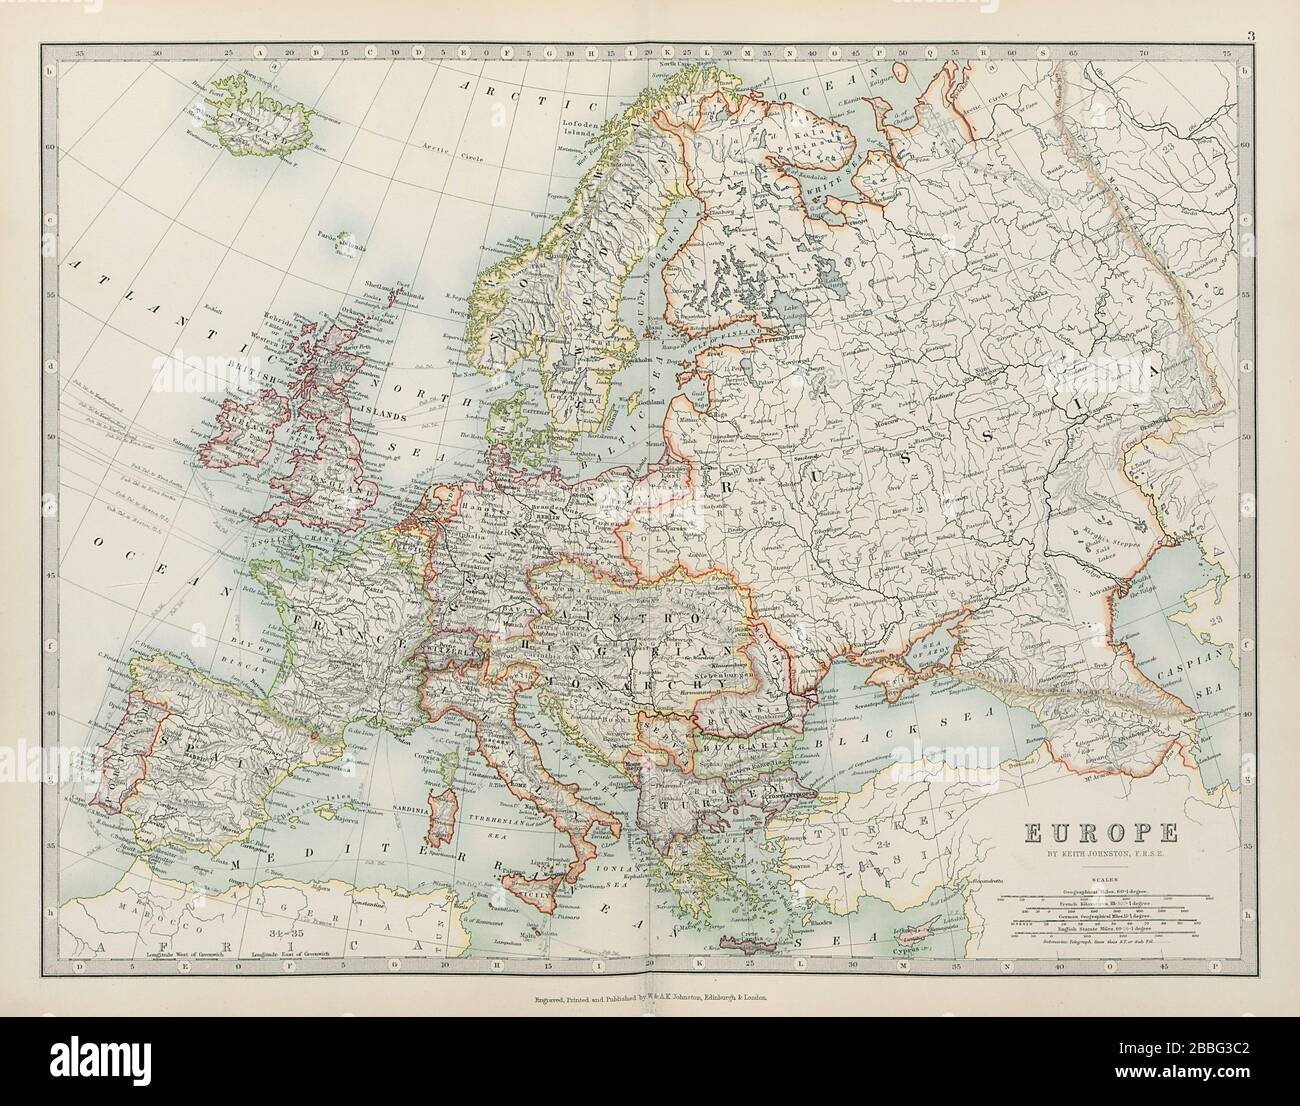 EUROPA politische Österreich-ungarische Monarchie Schiffahrtswege JOHNSTON Karte von 1901 Stockfoto